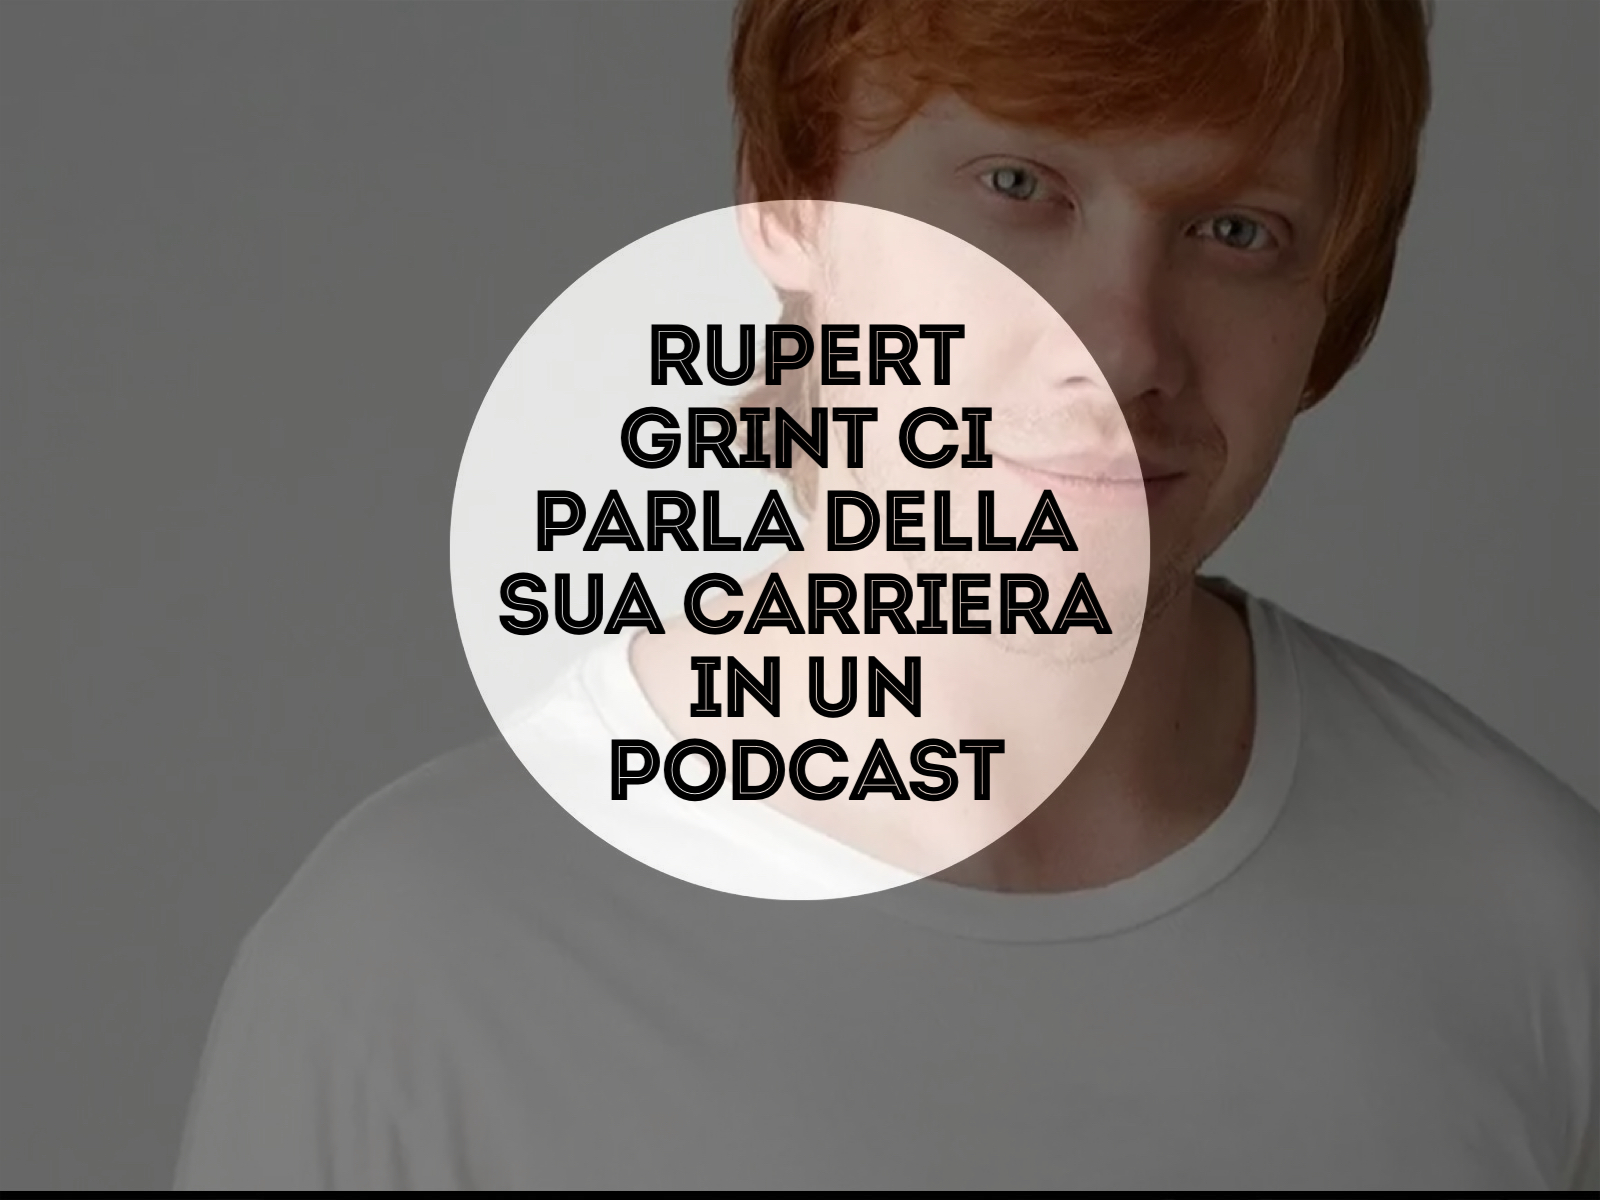 Rupert Grint ci parla della sua carriera in un Podcast